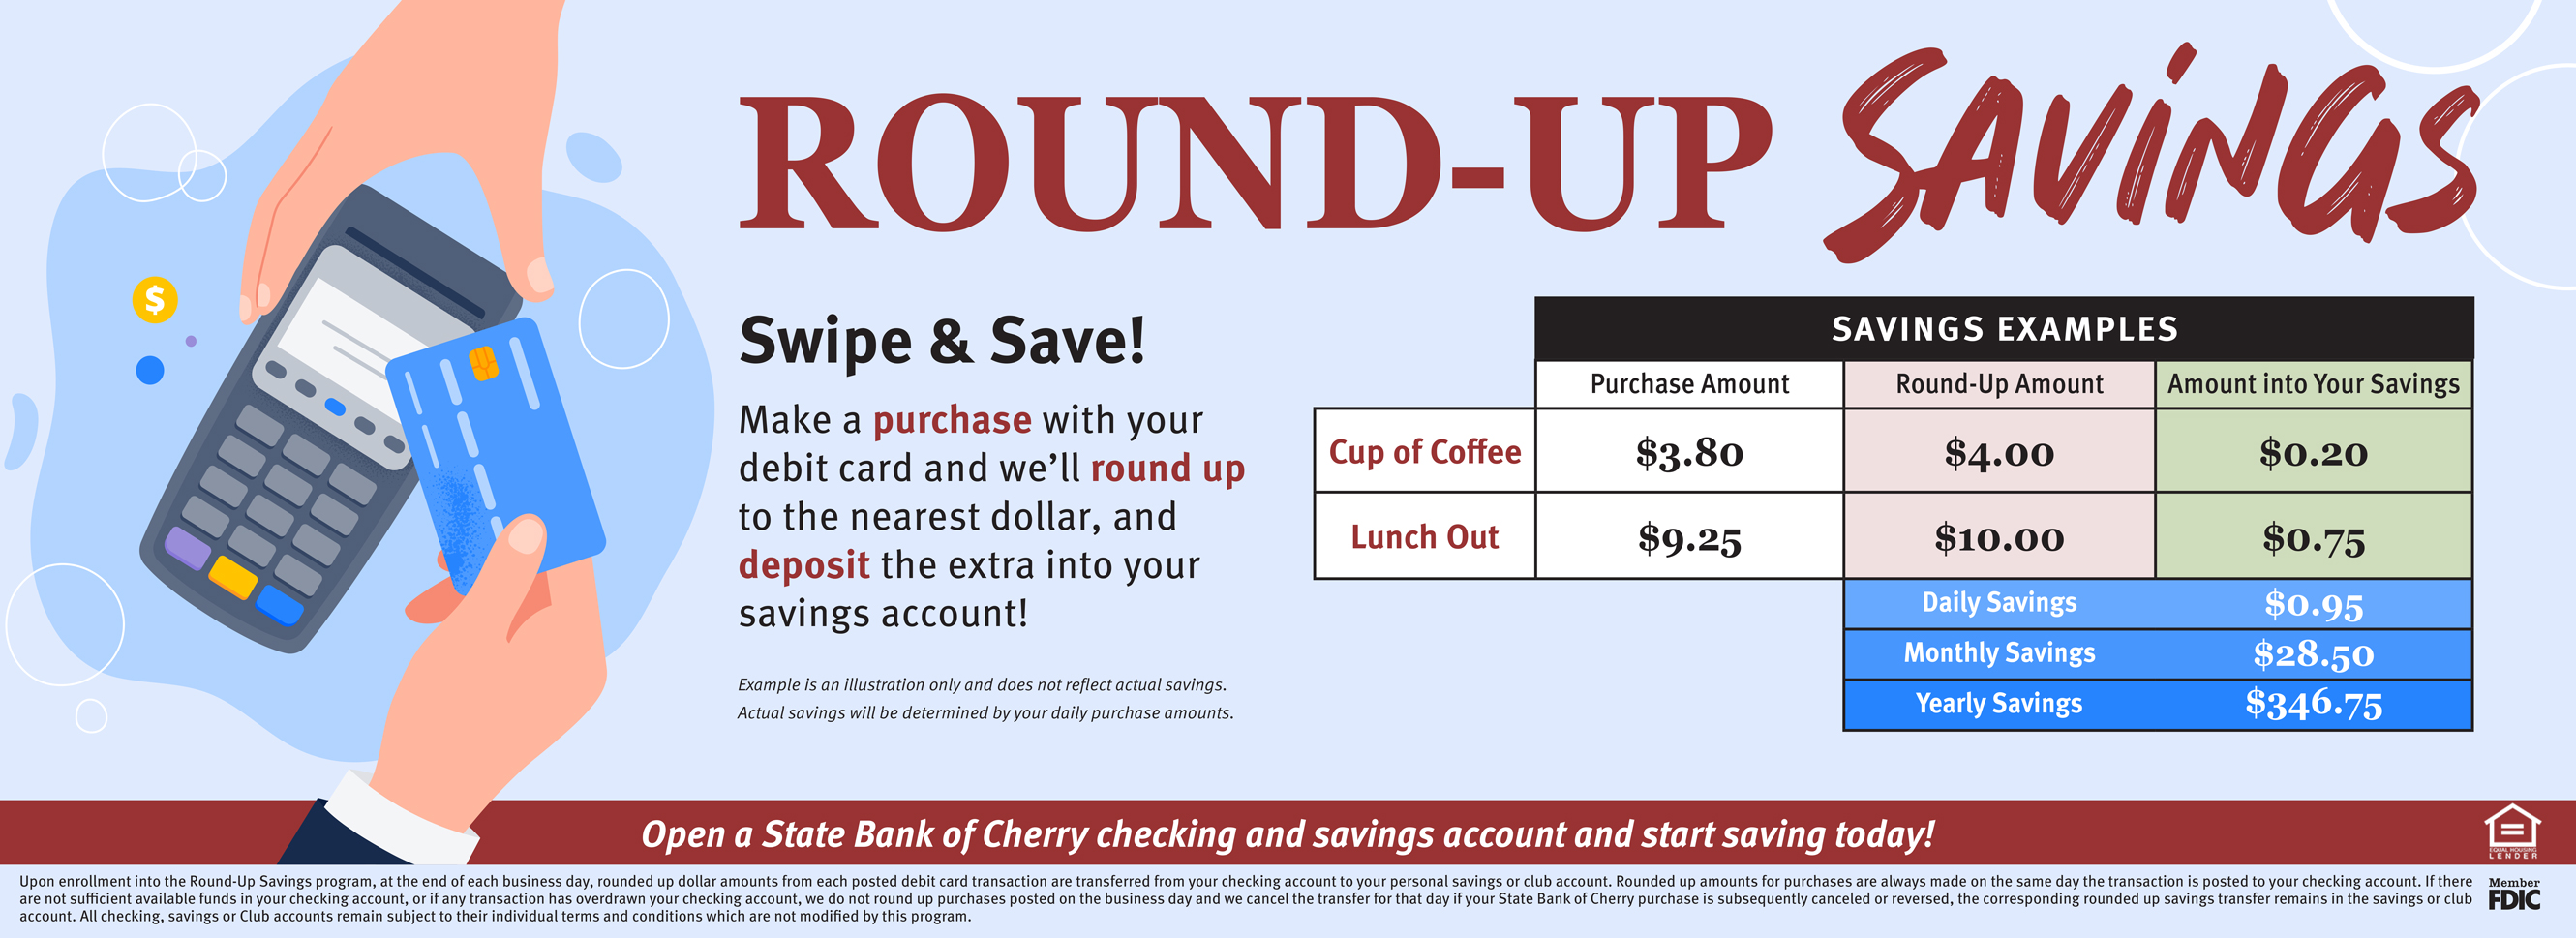 Round-Up Savings